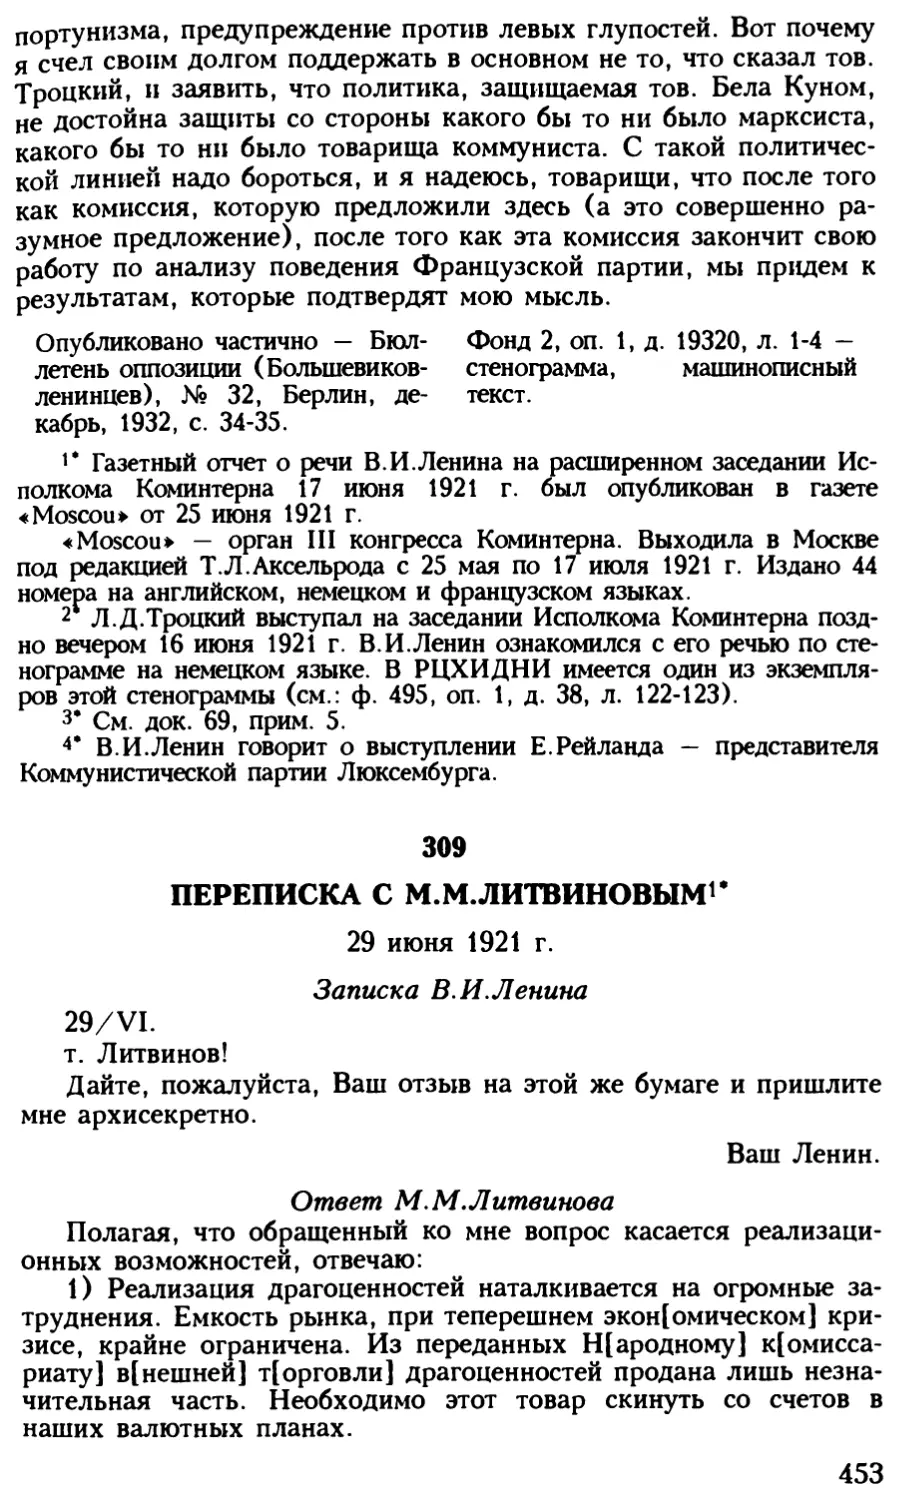 309. Переписка с М.М.Литвиновым. 29 июня 1921 г